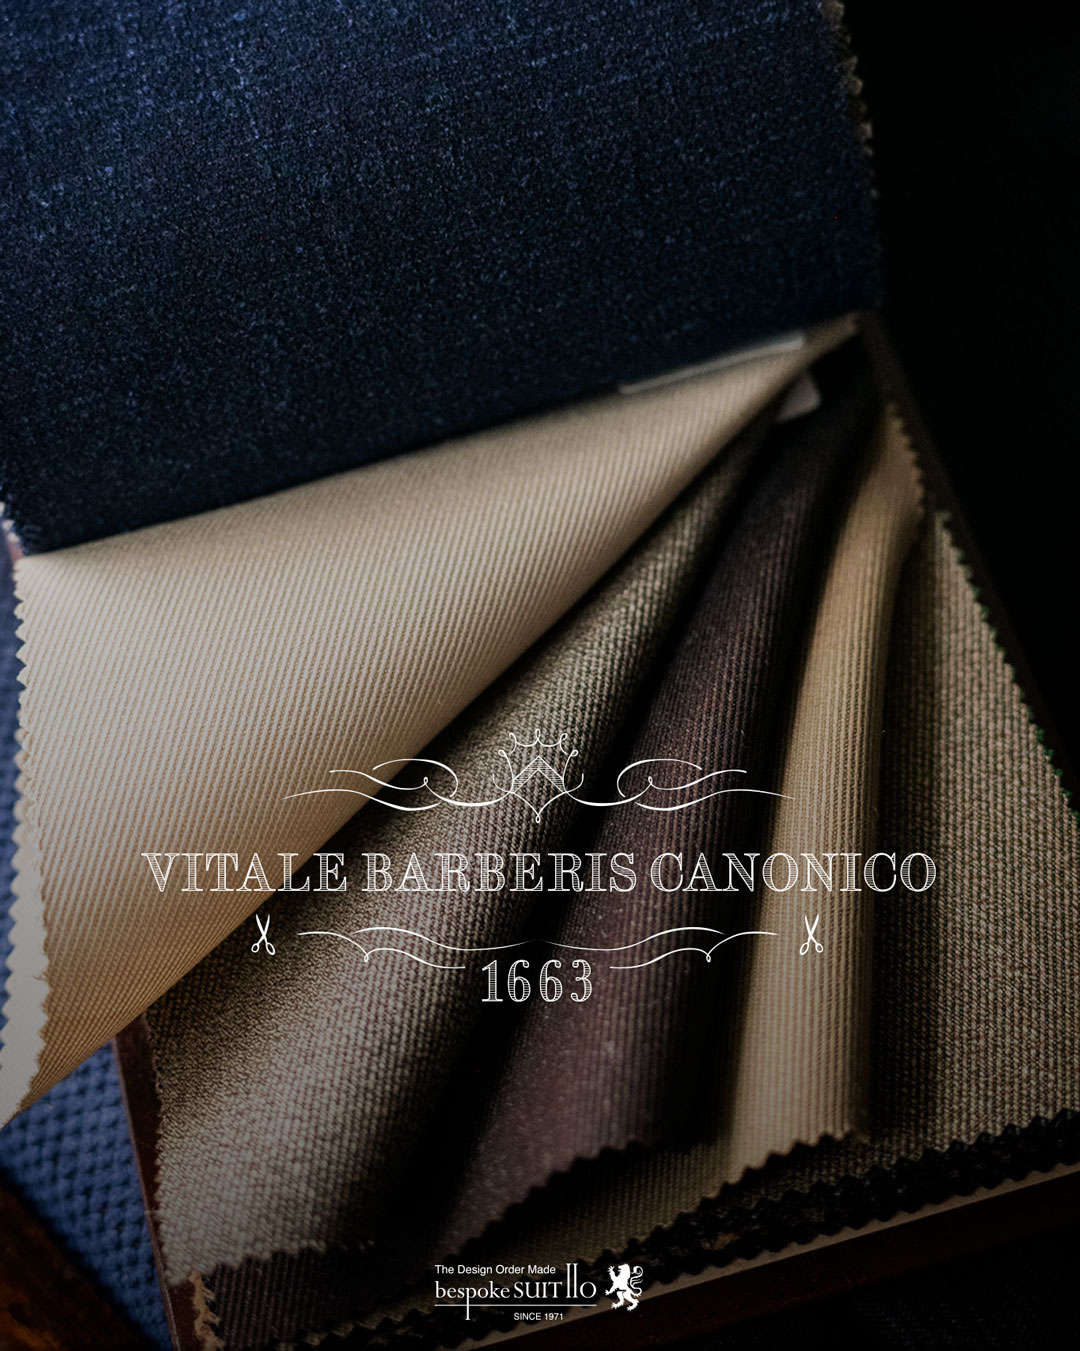 VITALE BARBERIS CANONICO（ヴィターレ・バルべリス・カノニコ）は、イタリアの老舗の生地メーカーです。1635年に創業し、現在も同じ家系で経営されています¹²。世界中の高級スーツやコートのブランドに生地を提供しており、品質と伝統を重んじるメーカーとして知られています³。VITALE BARBERIS CANONICOの生地は、上質なウールやカシミアなどの素材を使用し、独自の染色や織り方で美しい色合いや風合いを表現しています¹²。VITALE BARBERIS CANONICOの生地を使ったスーツやコートは、エレガントで洗練された印象を与えます。,2023aw秋冬新柄コレクション入荷 ,ordersuits,ドレスシャツオーダージャケット,orderJacket,オーダーベスト,oedervest,ビスポーク,,オーダーシャツ,オーダースーツ,背広,誂え,仕立,紳士,福岡,黒崎,小倉,北九州,八幡西区,ビスポークスーツ１１０,bespokeSUIT110,bespokeSUITIIO,